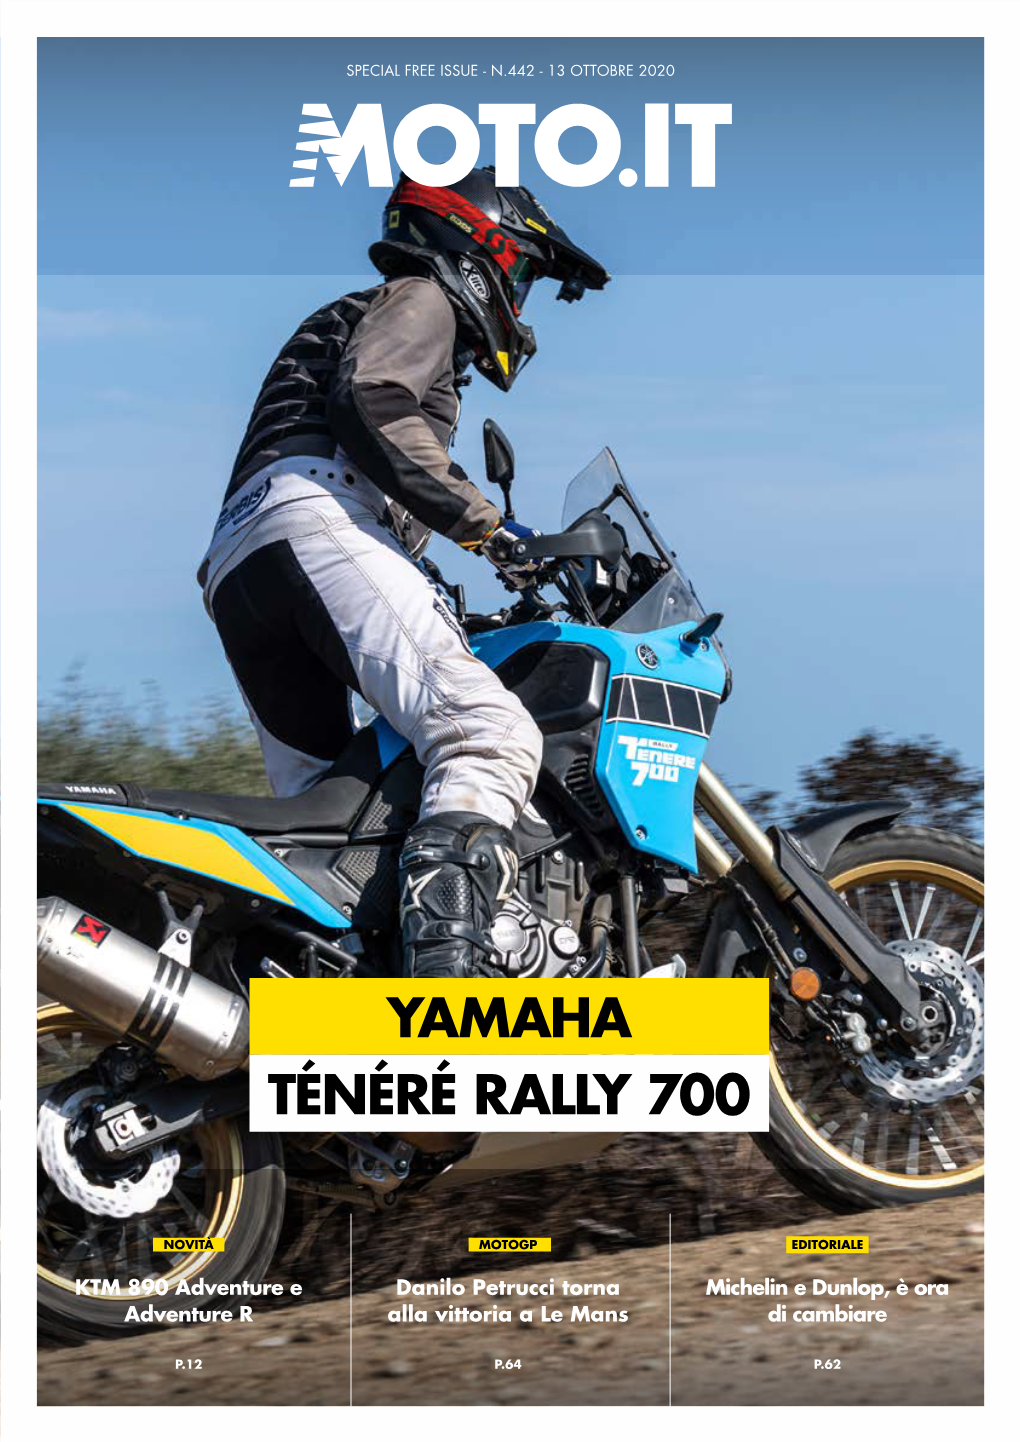 Yamaha Ténéré Rally 700